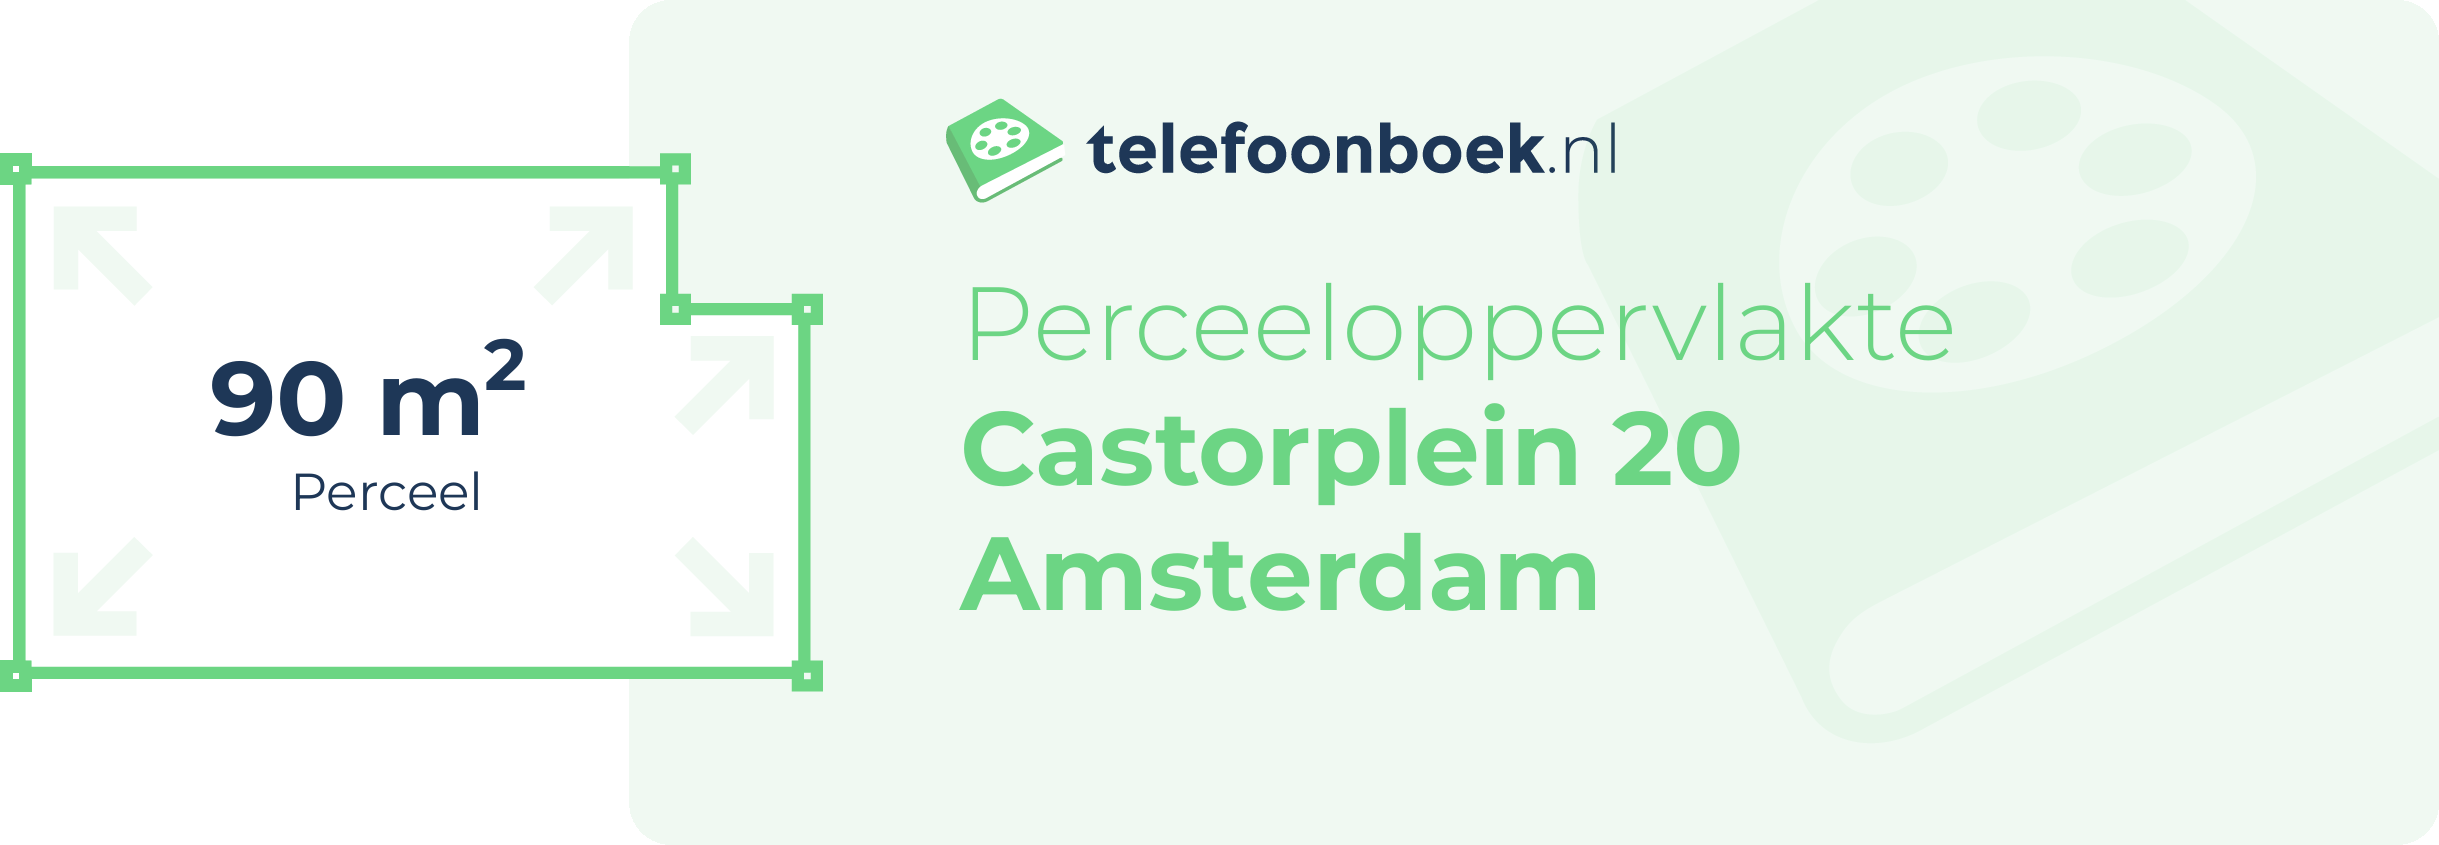 Perceeloppervlakte Castorplein 20 Amsterdam